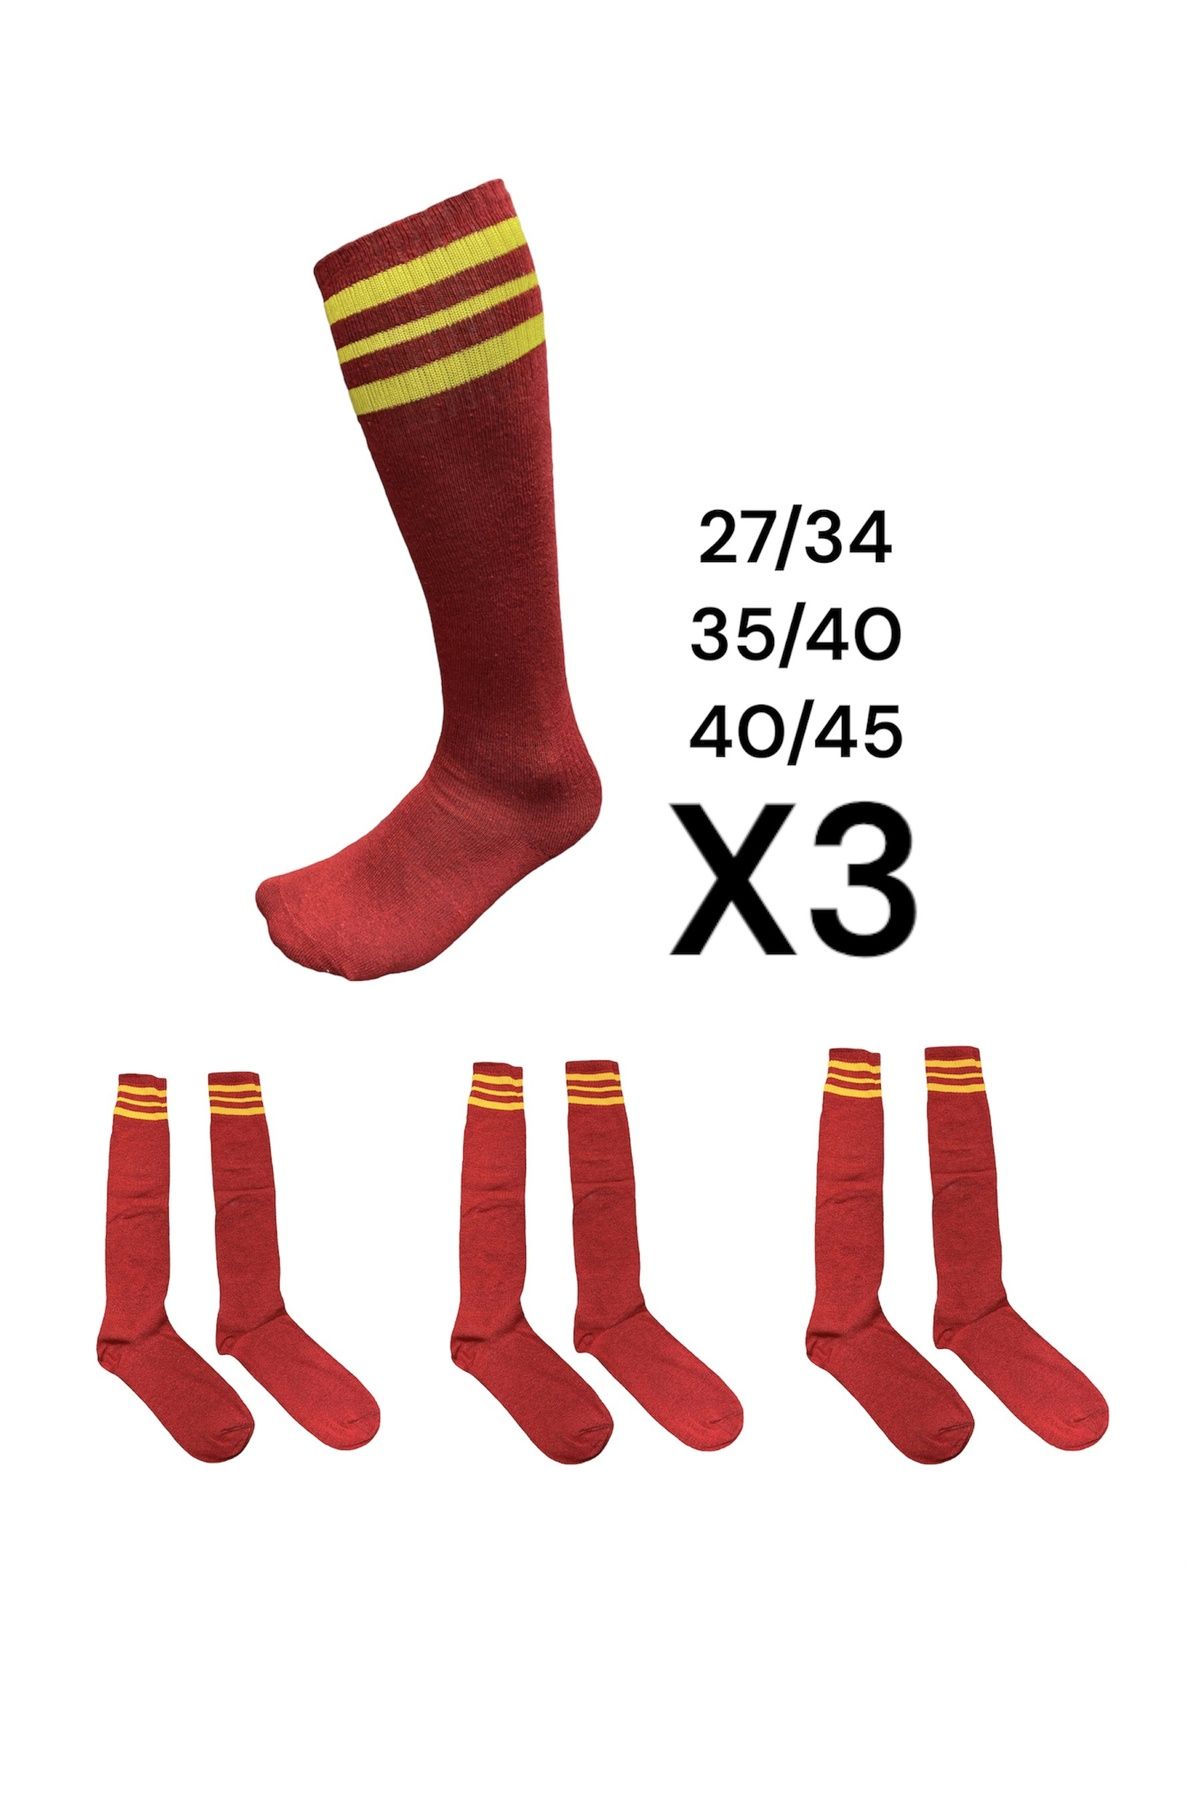 Suq giyim Futbol Çorabı Tozluk 3 Lü Paket Kırmızı Sarı Çocuk Yetişkin